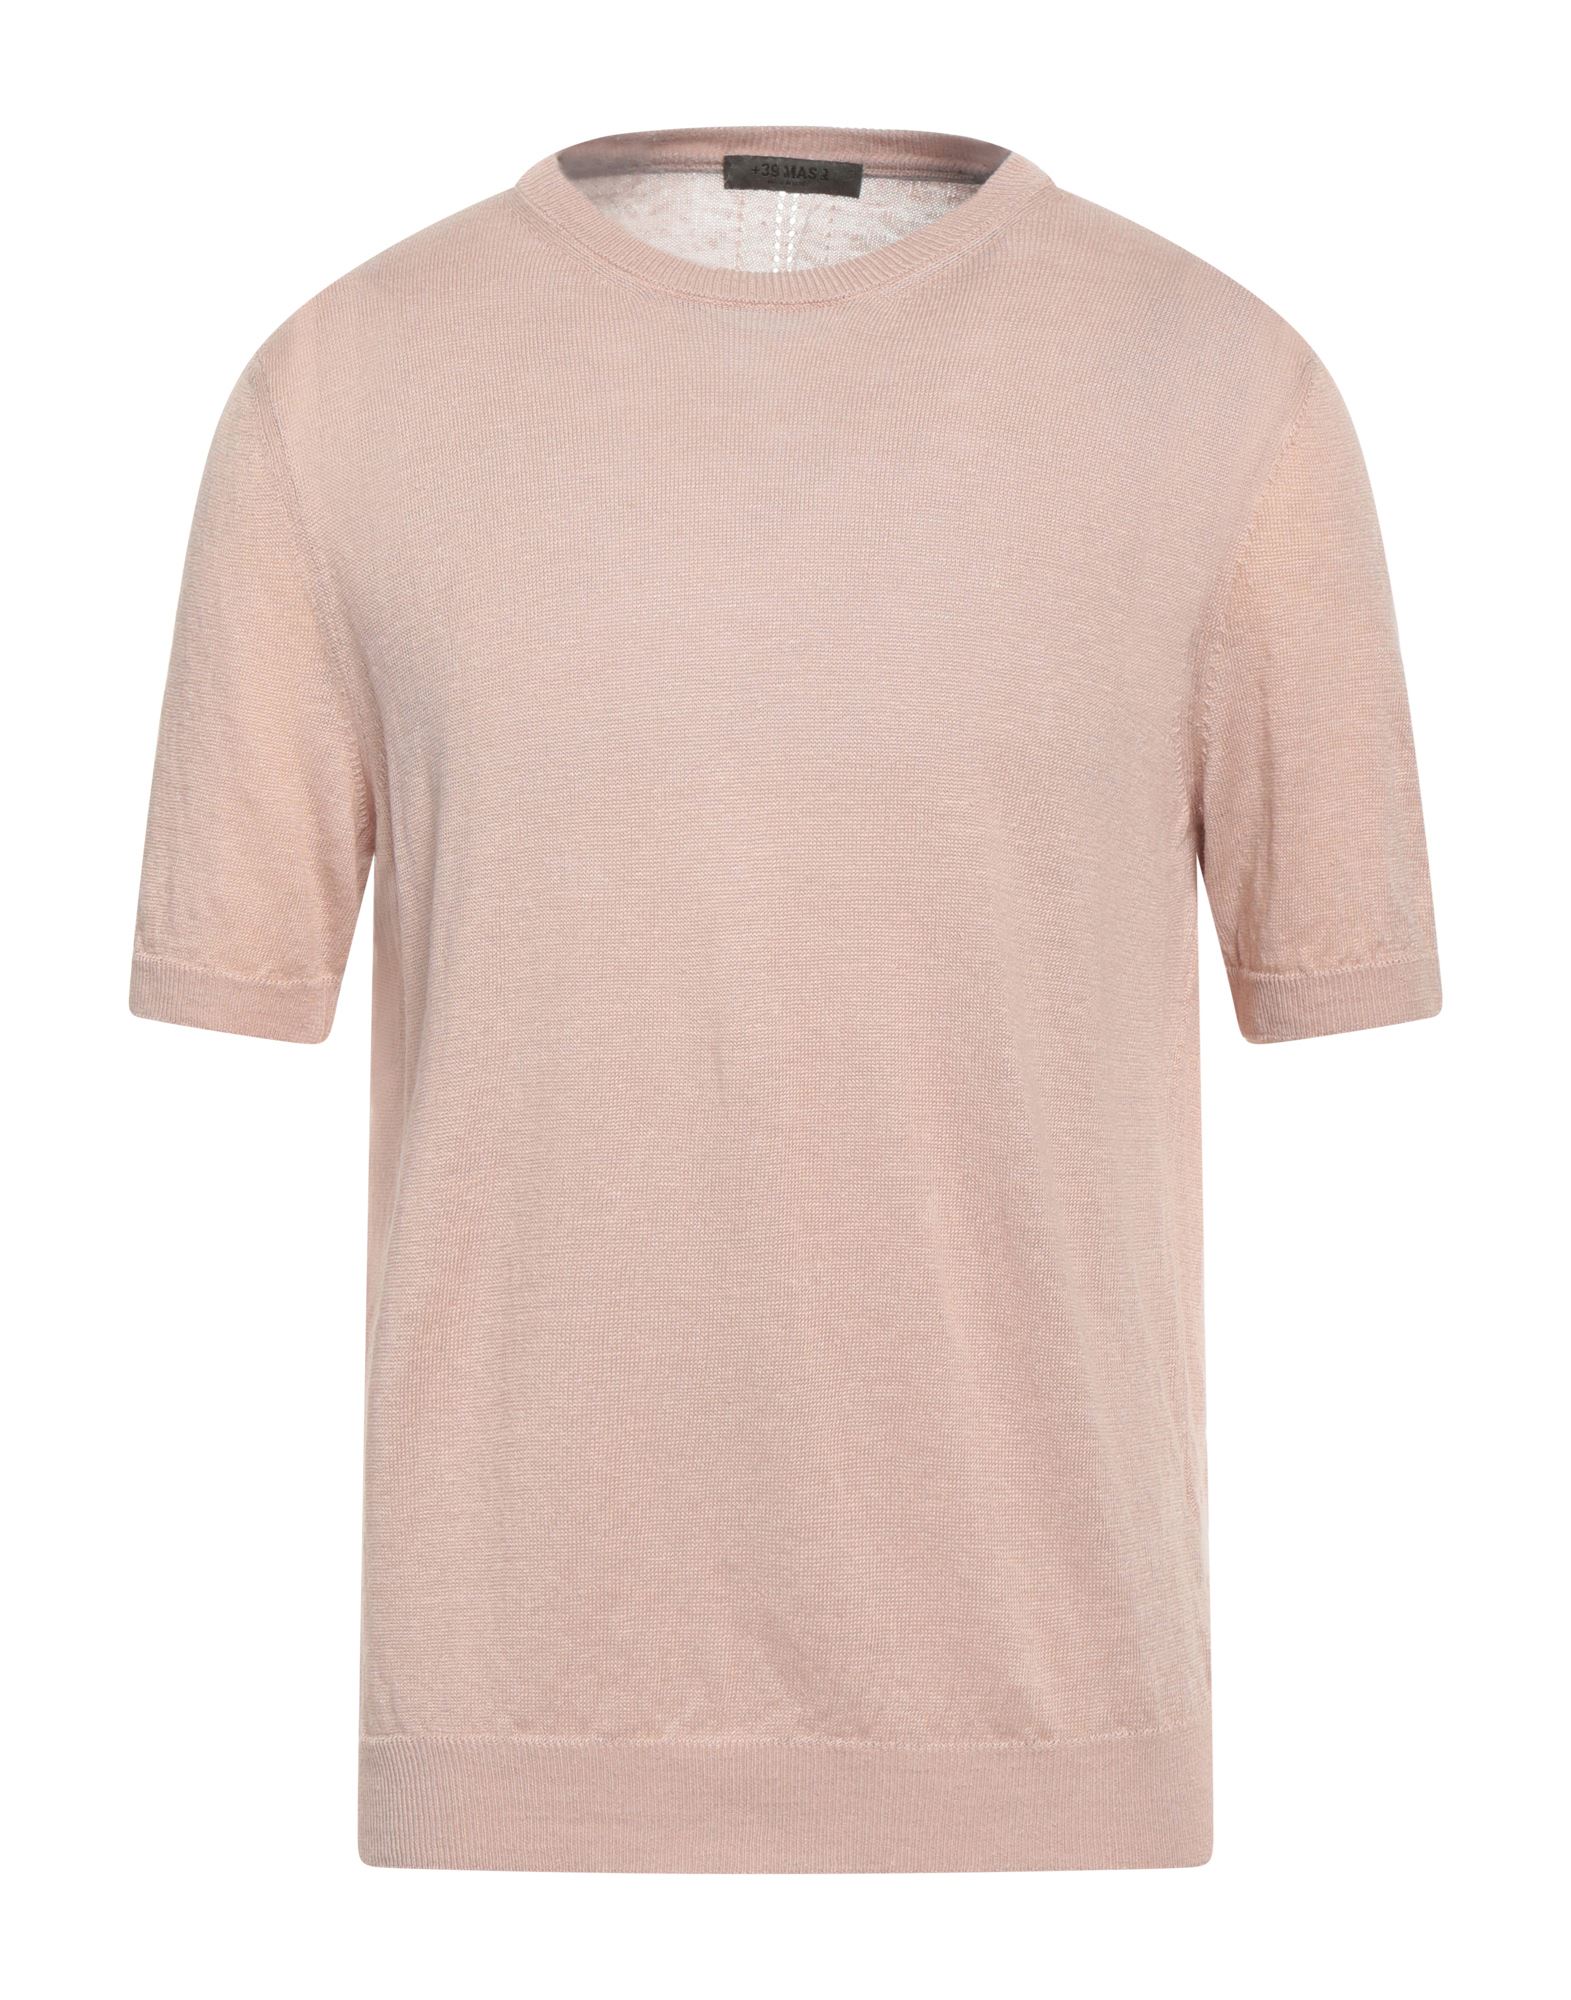 +39 Masq Man Sweater Light Pink Size Xl Linen